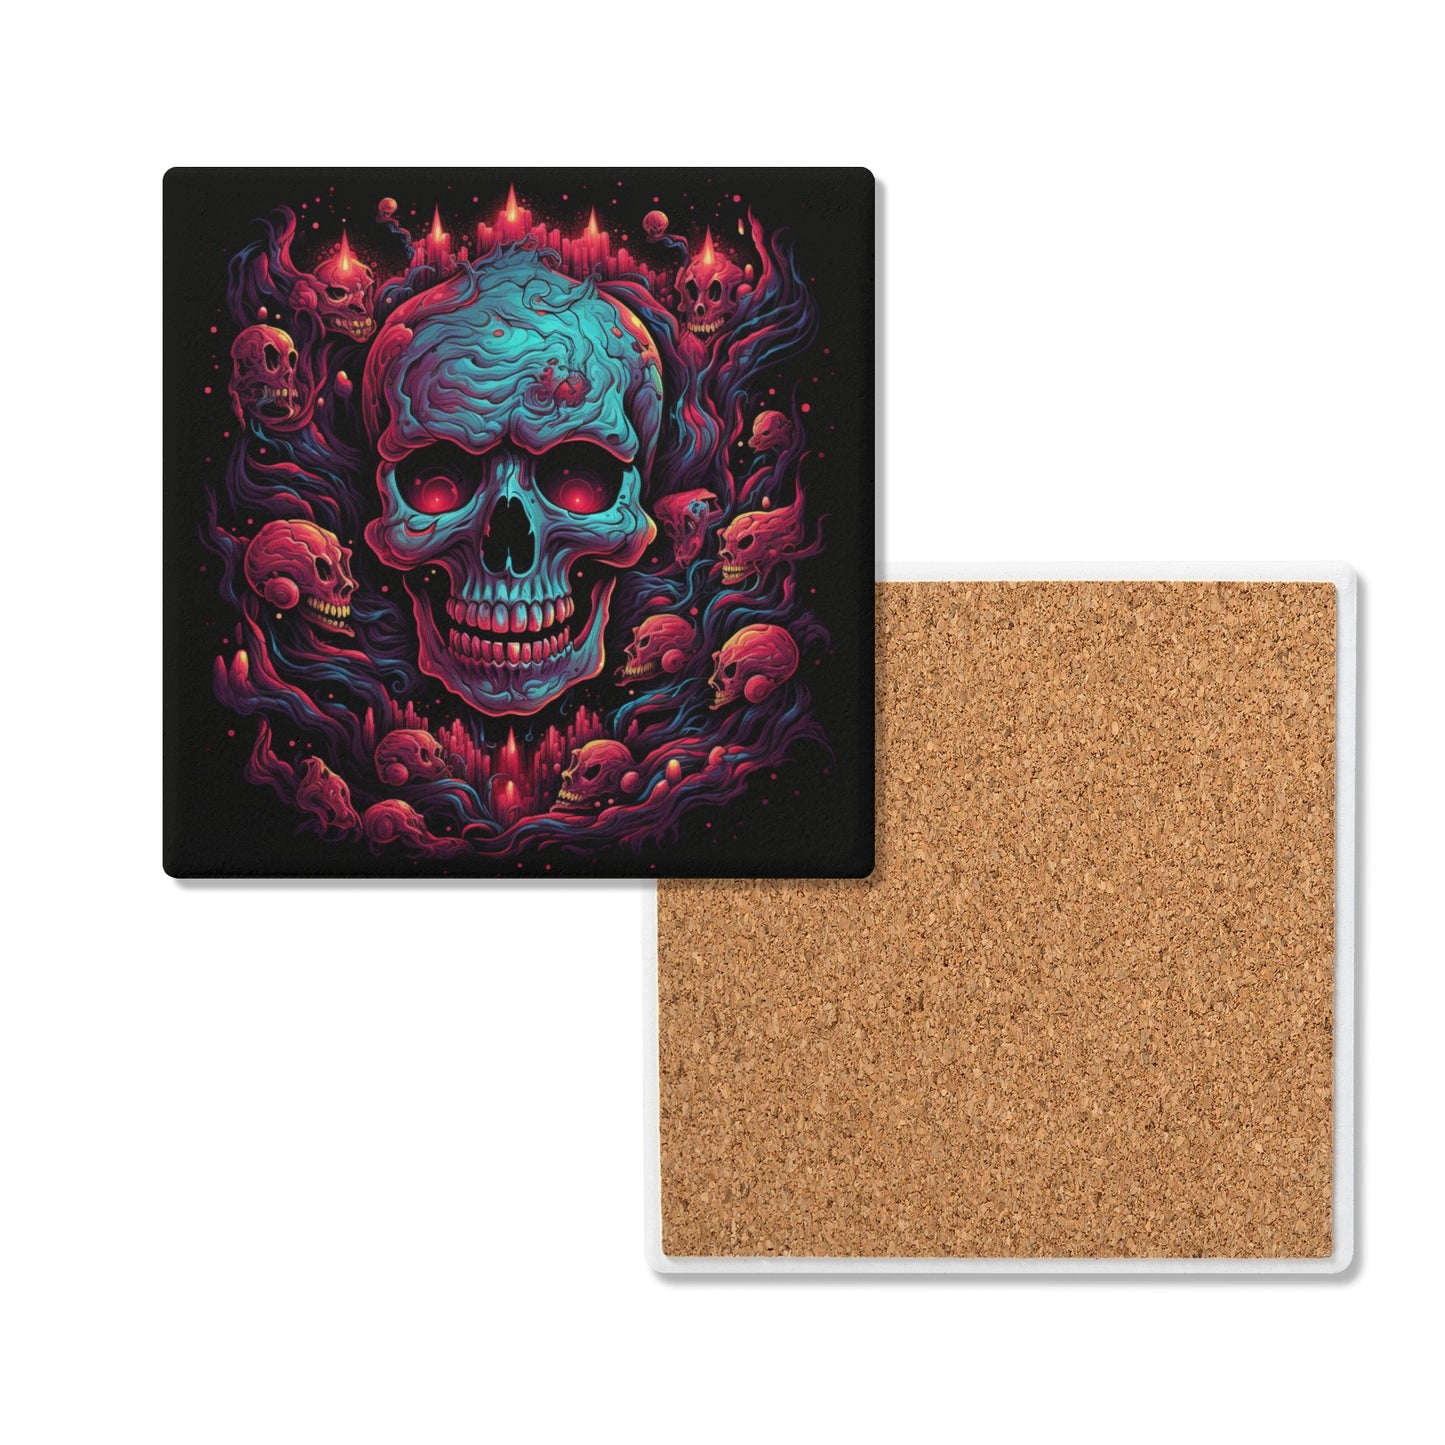 Smiling Skulls Square Ceramic Coasters (4 Pack)